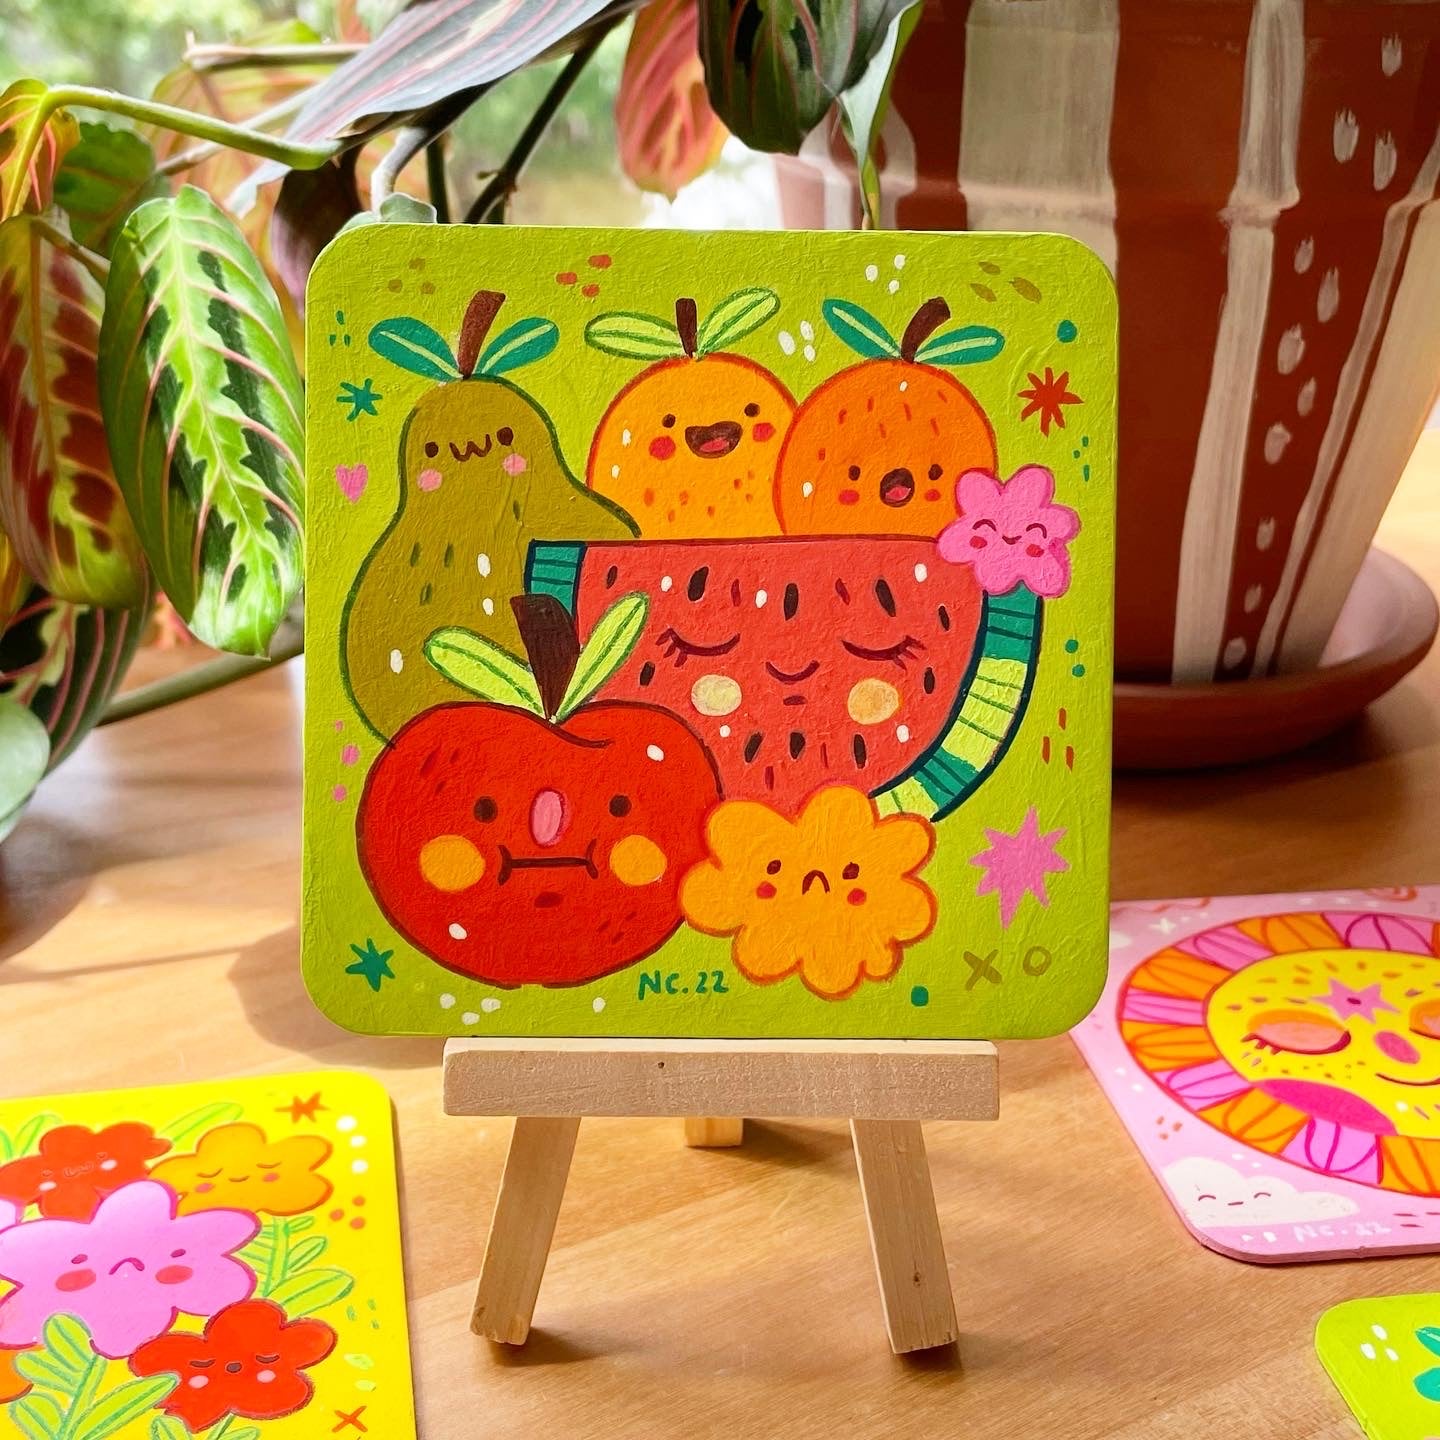 Original Painting ♡ Fruit Salad - Salut!7 Coaster